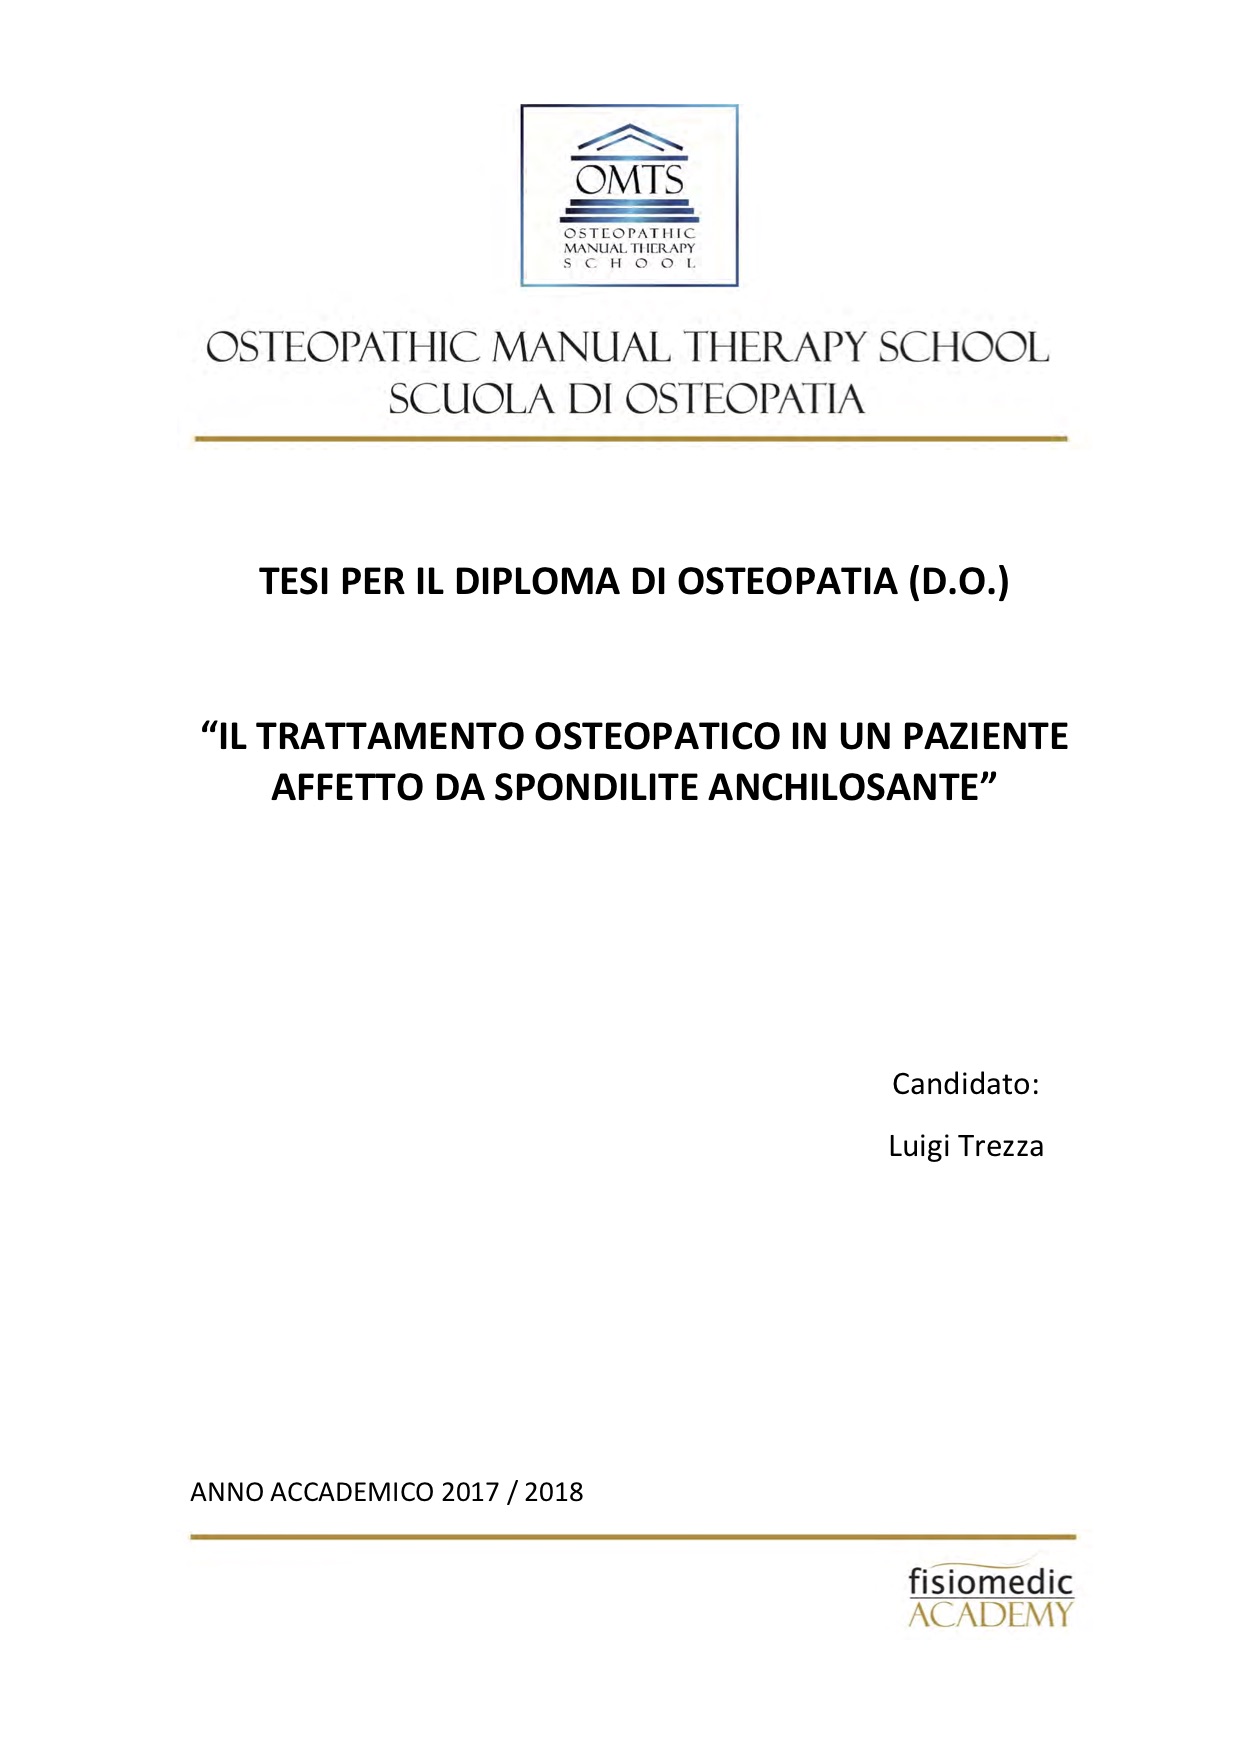 Luigi Trezza Tesi Diploma Osteopatia 2018